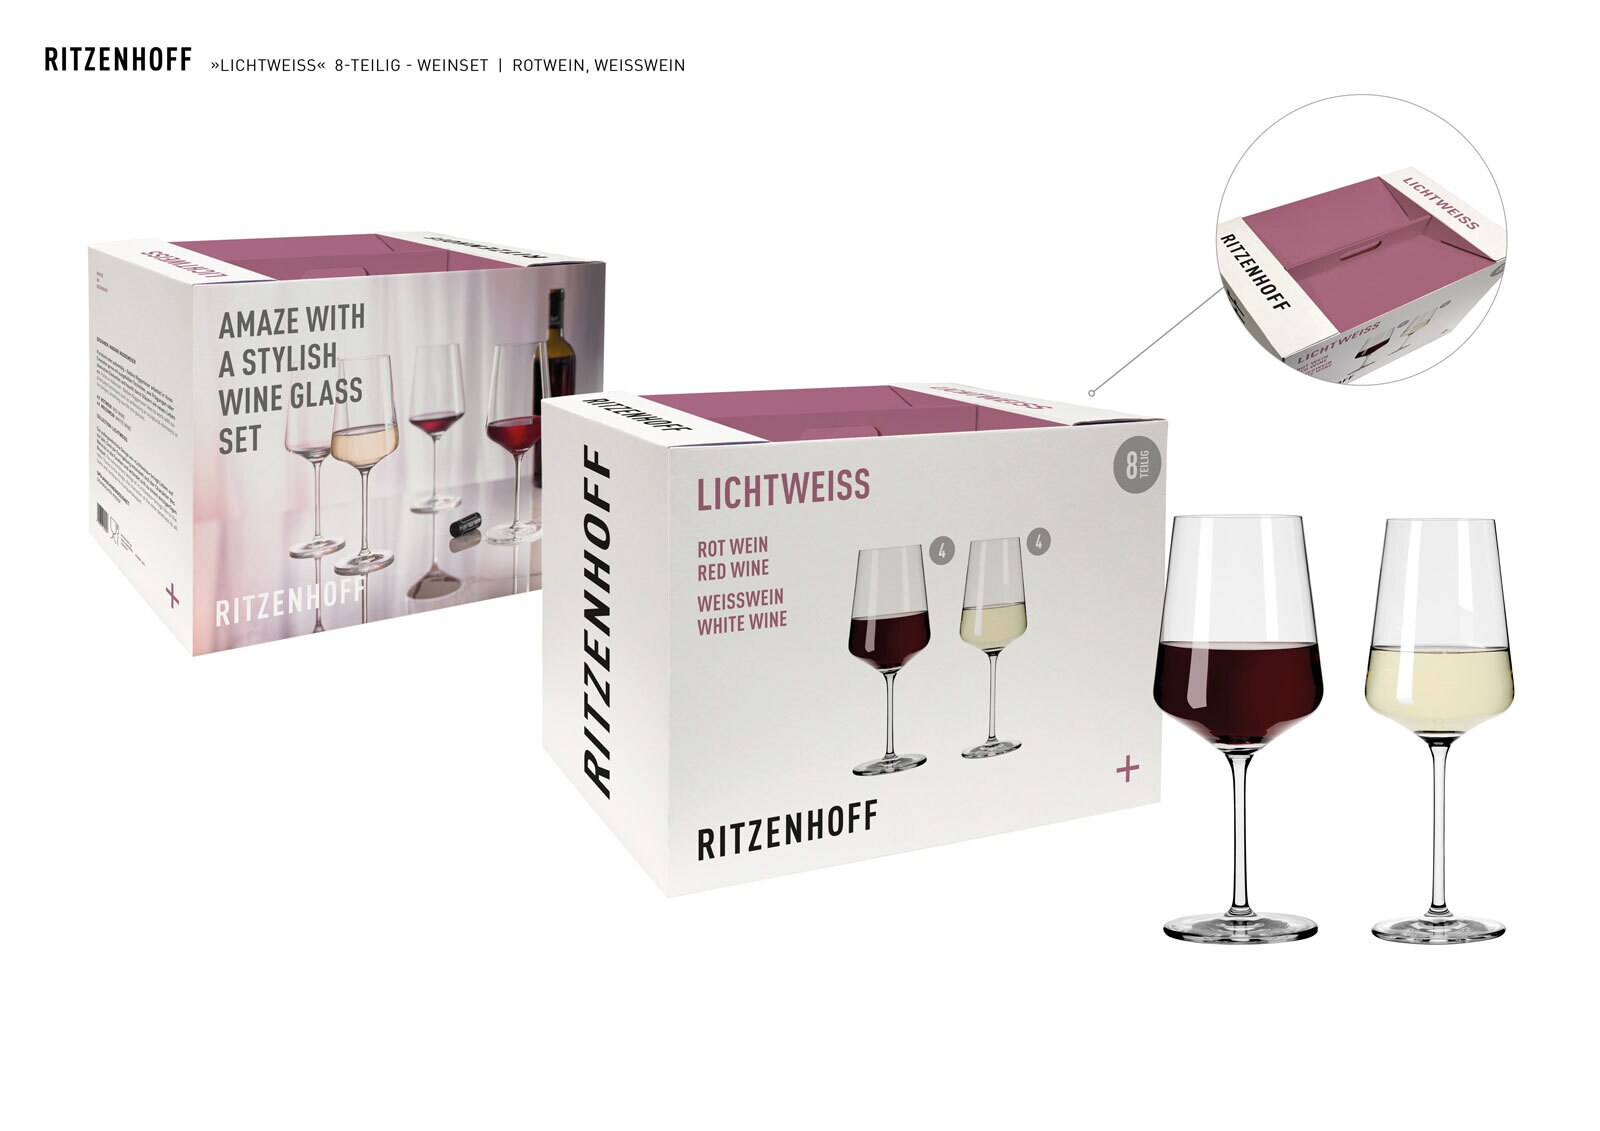 RITZENHOFF Weinglas Set LICHTWEISS 8-teilig